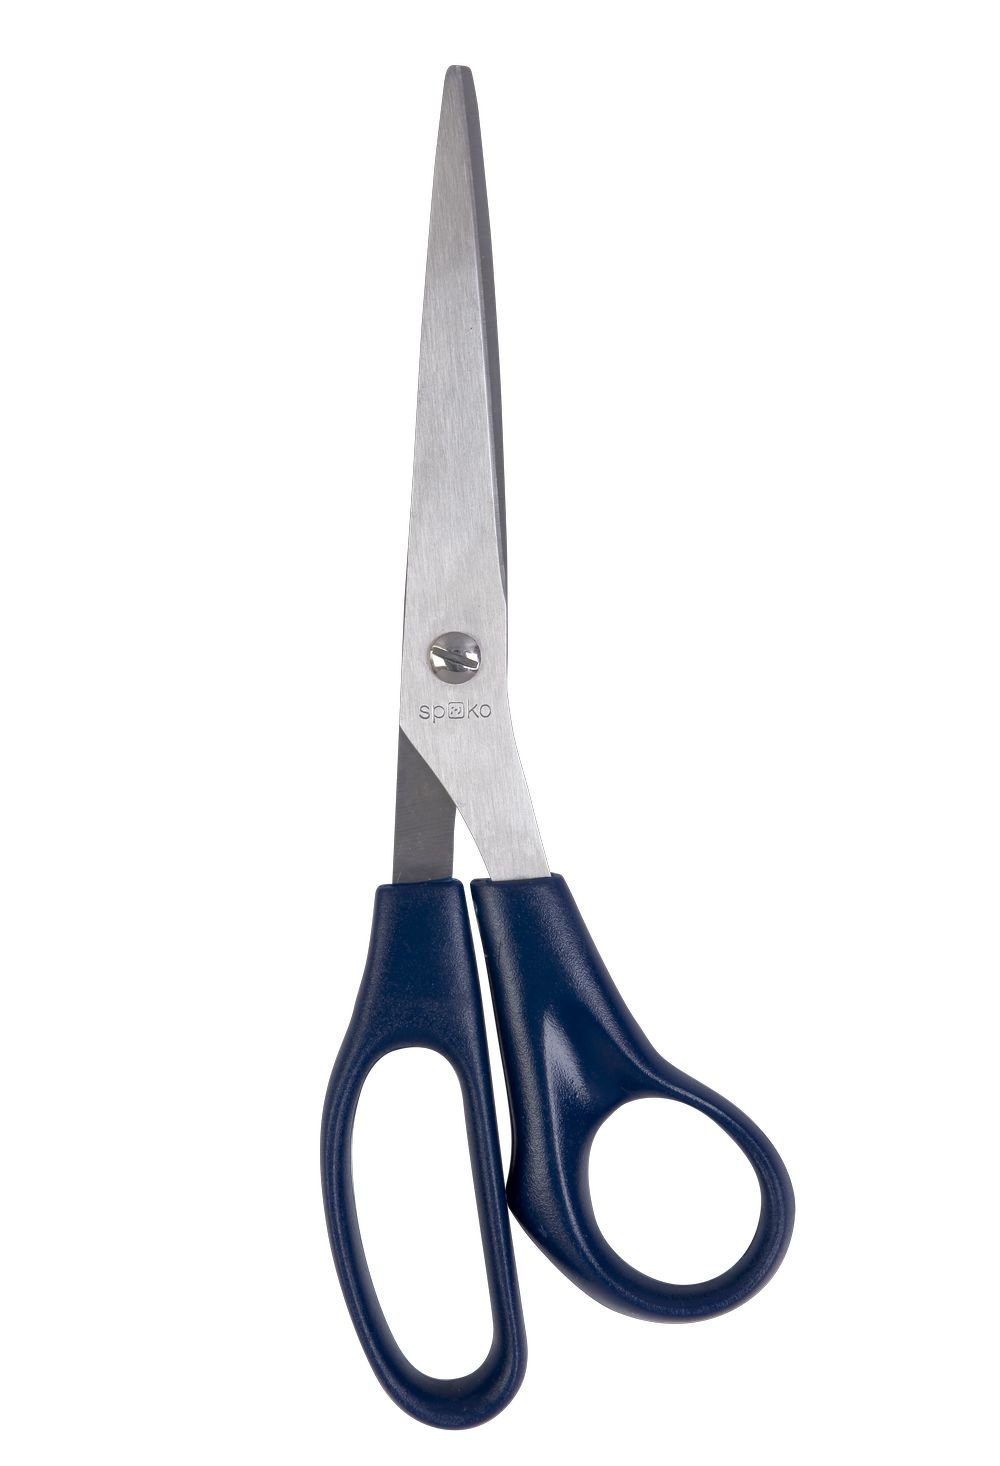 Spoko nůžky kancelářské Economy, 21 cm, asymetrické, tmavě modré - 6ks